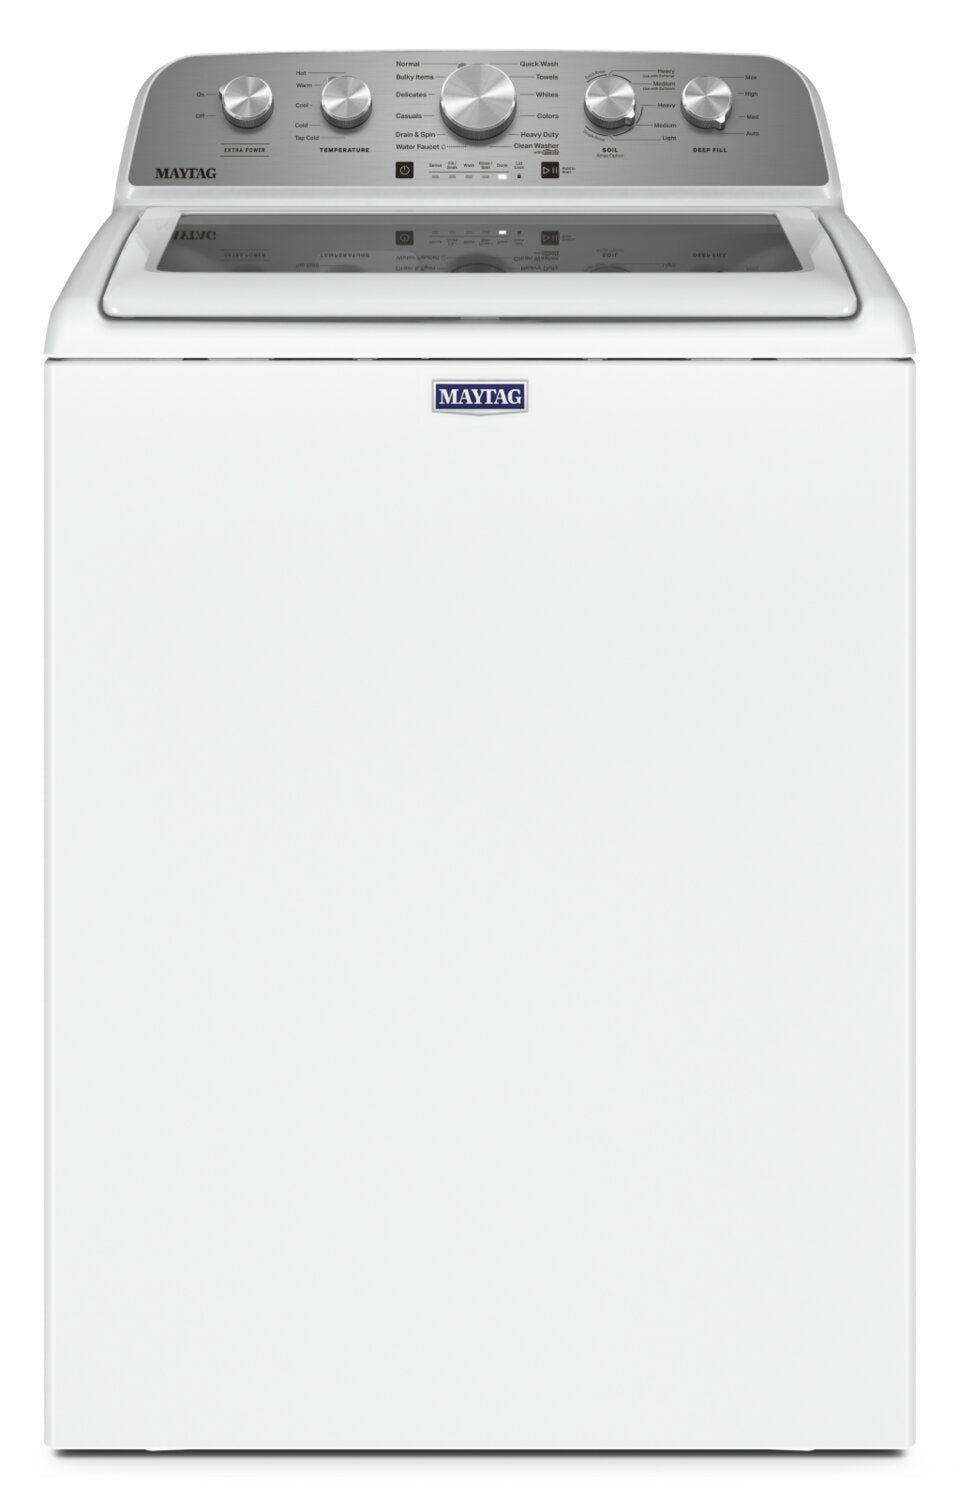 Machine à laver à chargement par le haut Samsung 11 KG / Blanc